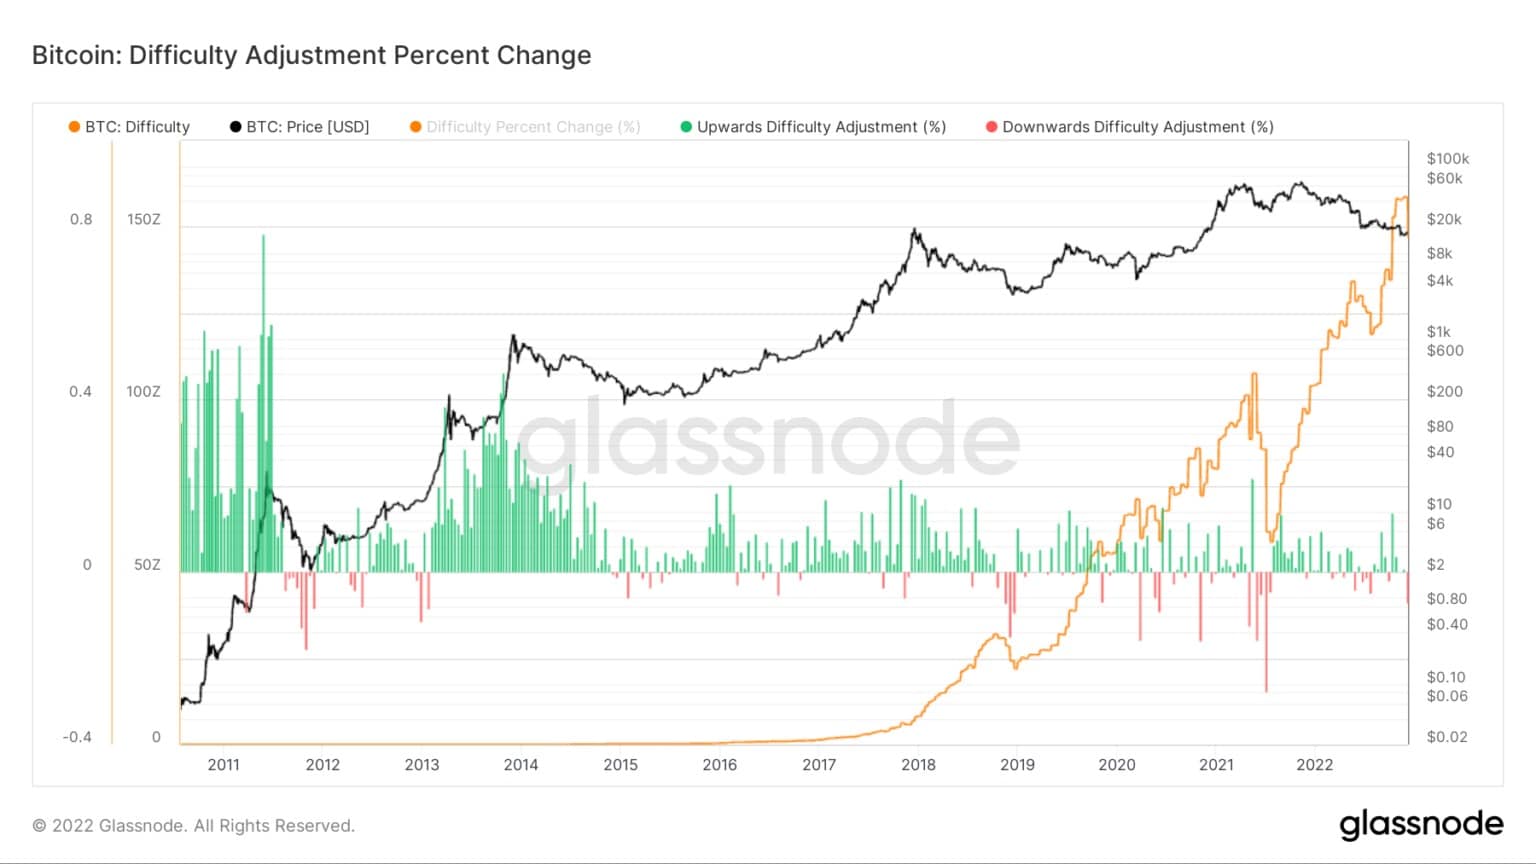 Grafik, die die prozentuale Veränderung der Bitcoin-Schwierigkeitsanpassung von 2011 bis 2022 zeigt (Quelle: Glassnode)